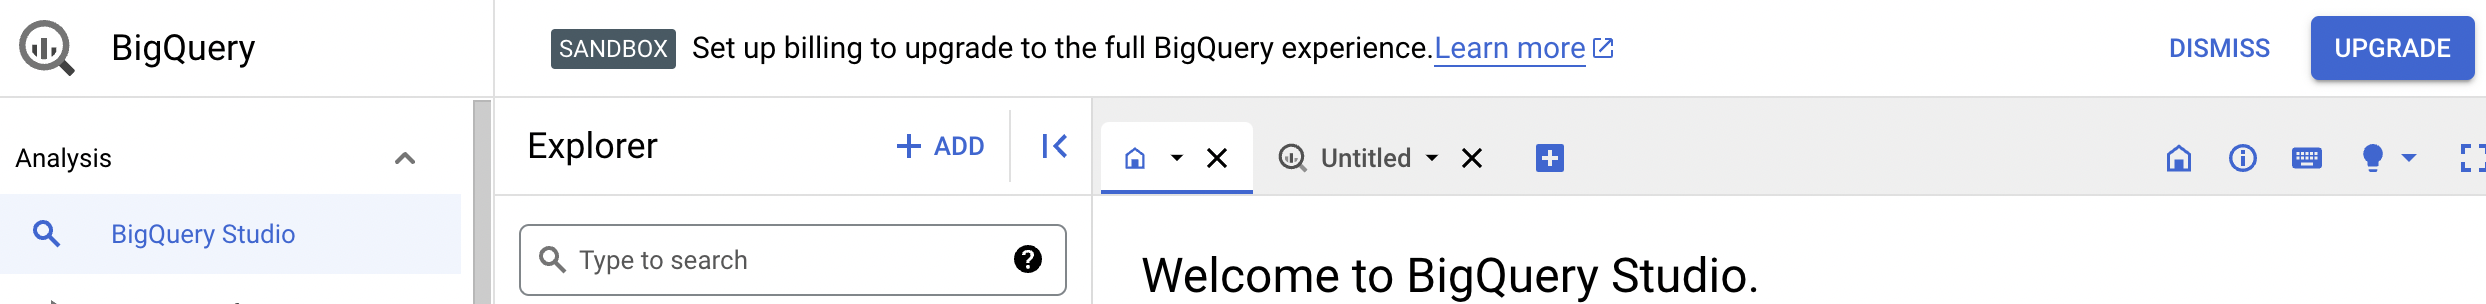 確認通知に、BigQuery のすべての機能を利用できるようになるアップグレード オプションが示されています。